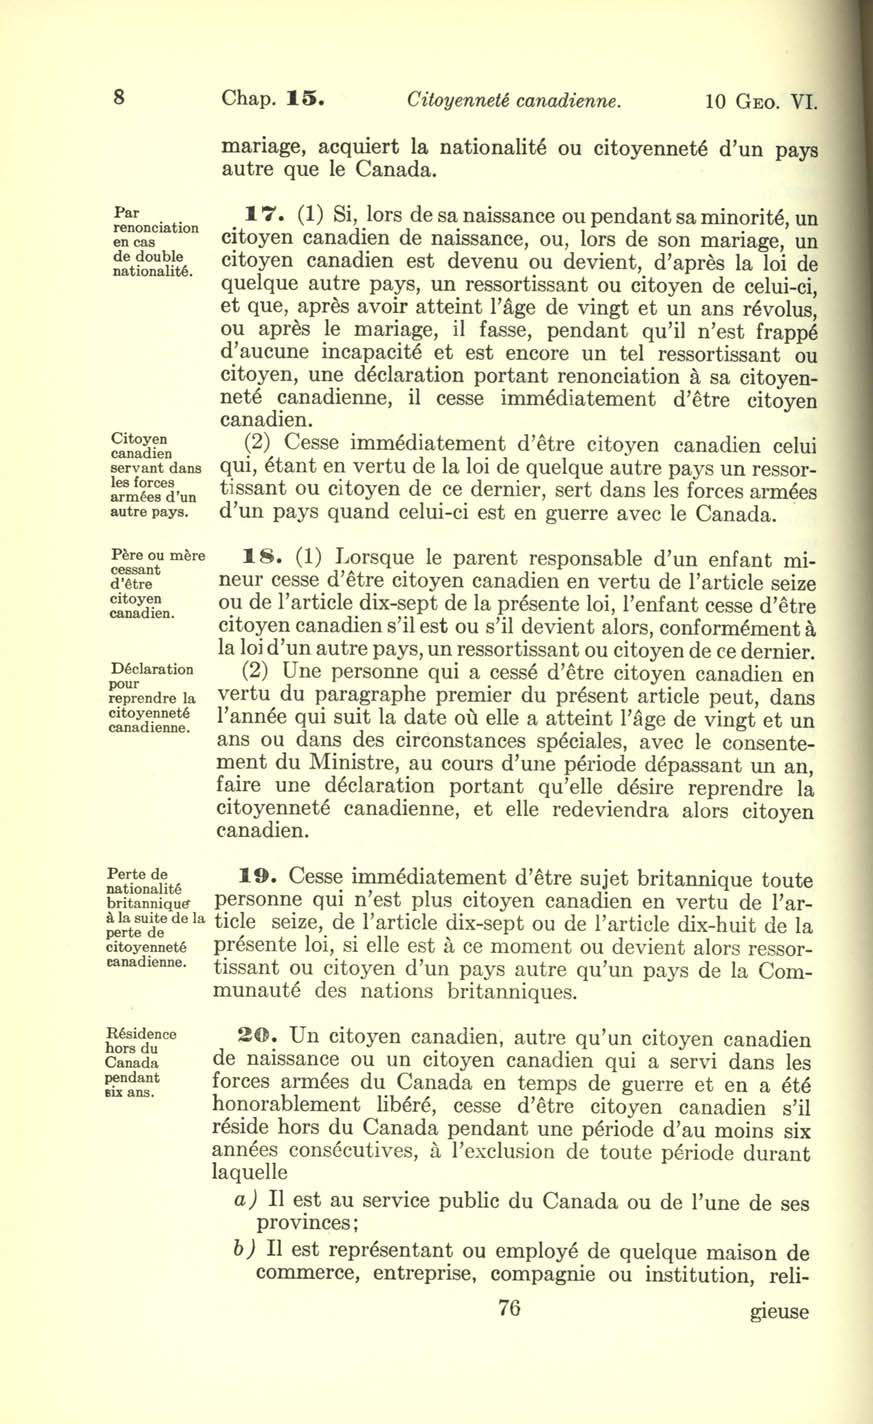 Chap. 15 Page 76 Loi sur la citoyenneté canadienne, 1947